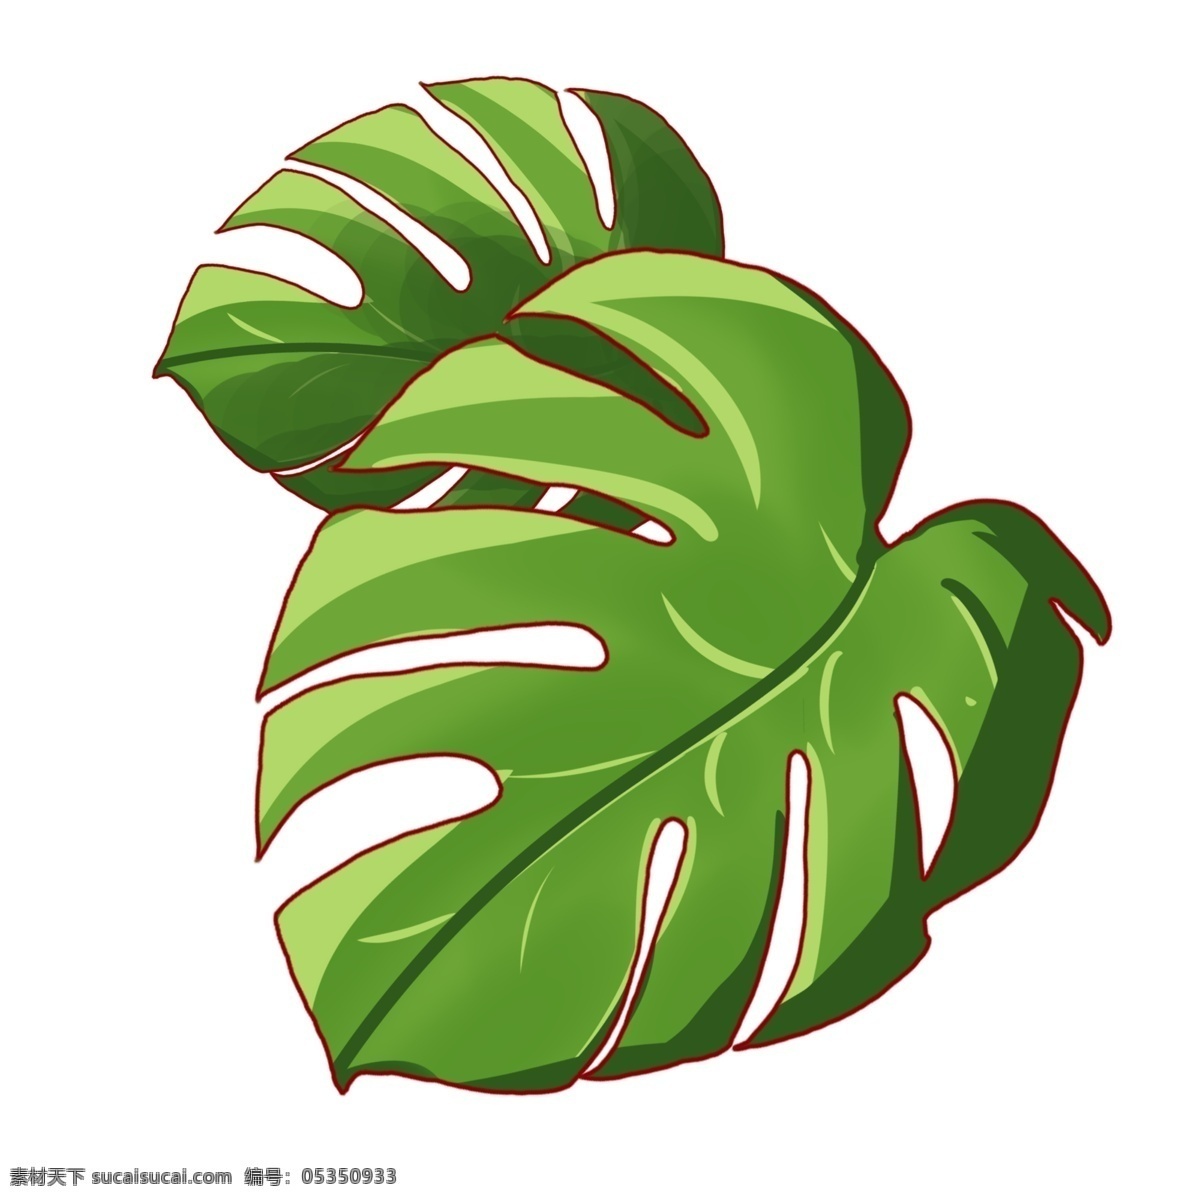 绿色热带植物 植物 绿色 叶子